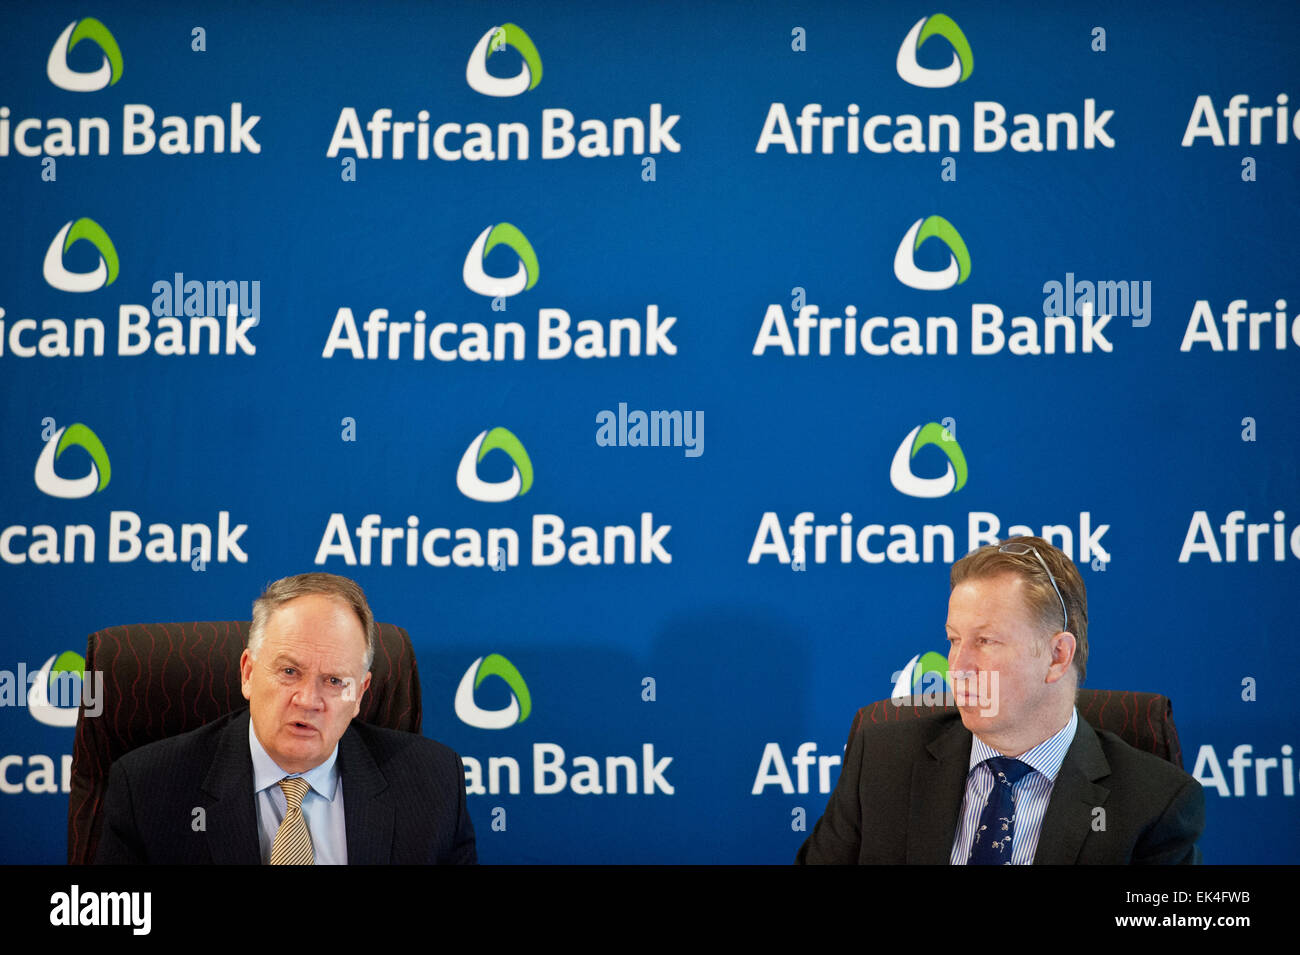 Conferencia de Prensa del Banco Africano: una actualización sobre la curaduría y la reestructuración del Banco Africano, así como un nuevo anuncio de precaución. Pic Delwyn Verasamy Foto de stock